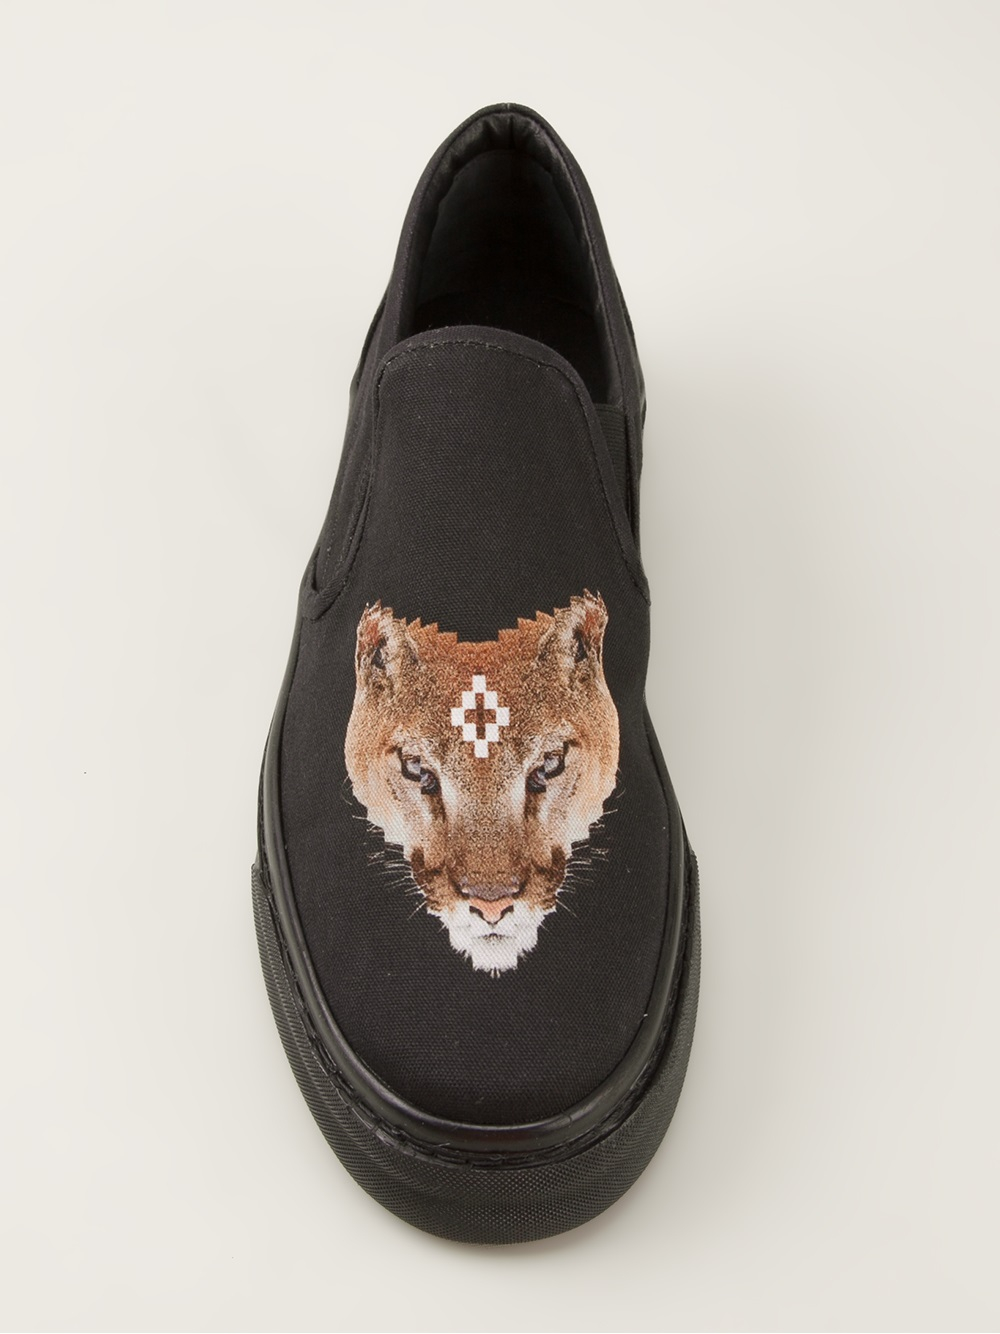 Marcelo Burlon Fox Print Slip On Shoe in Black for Men - Lyst